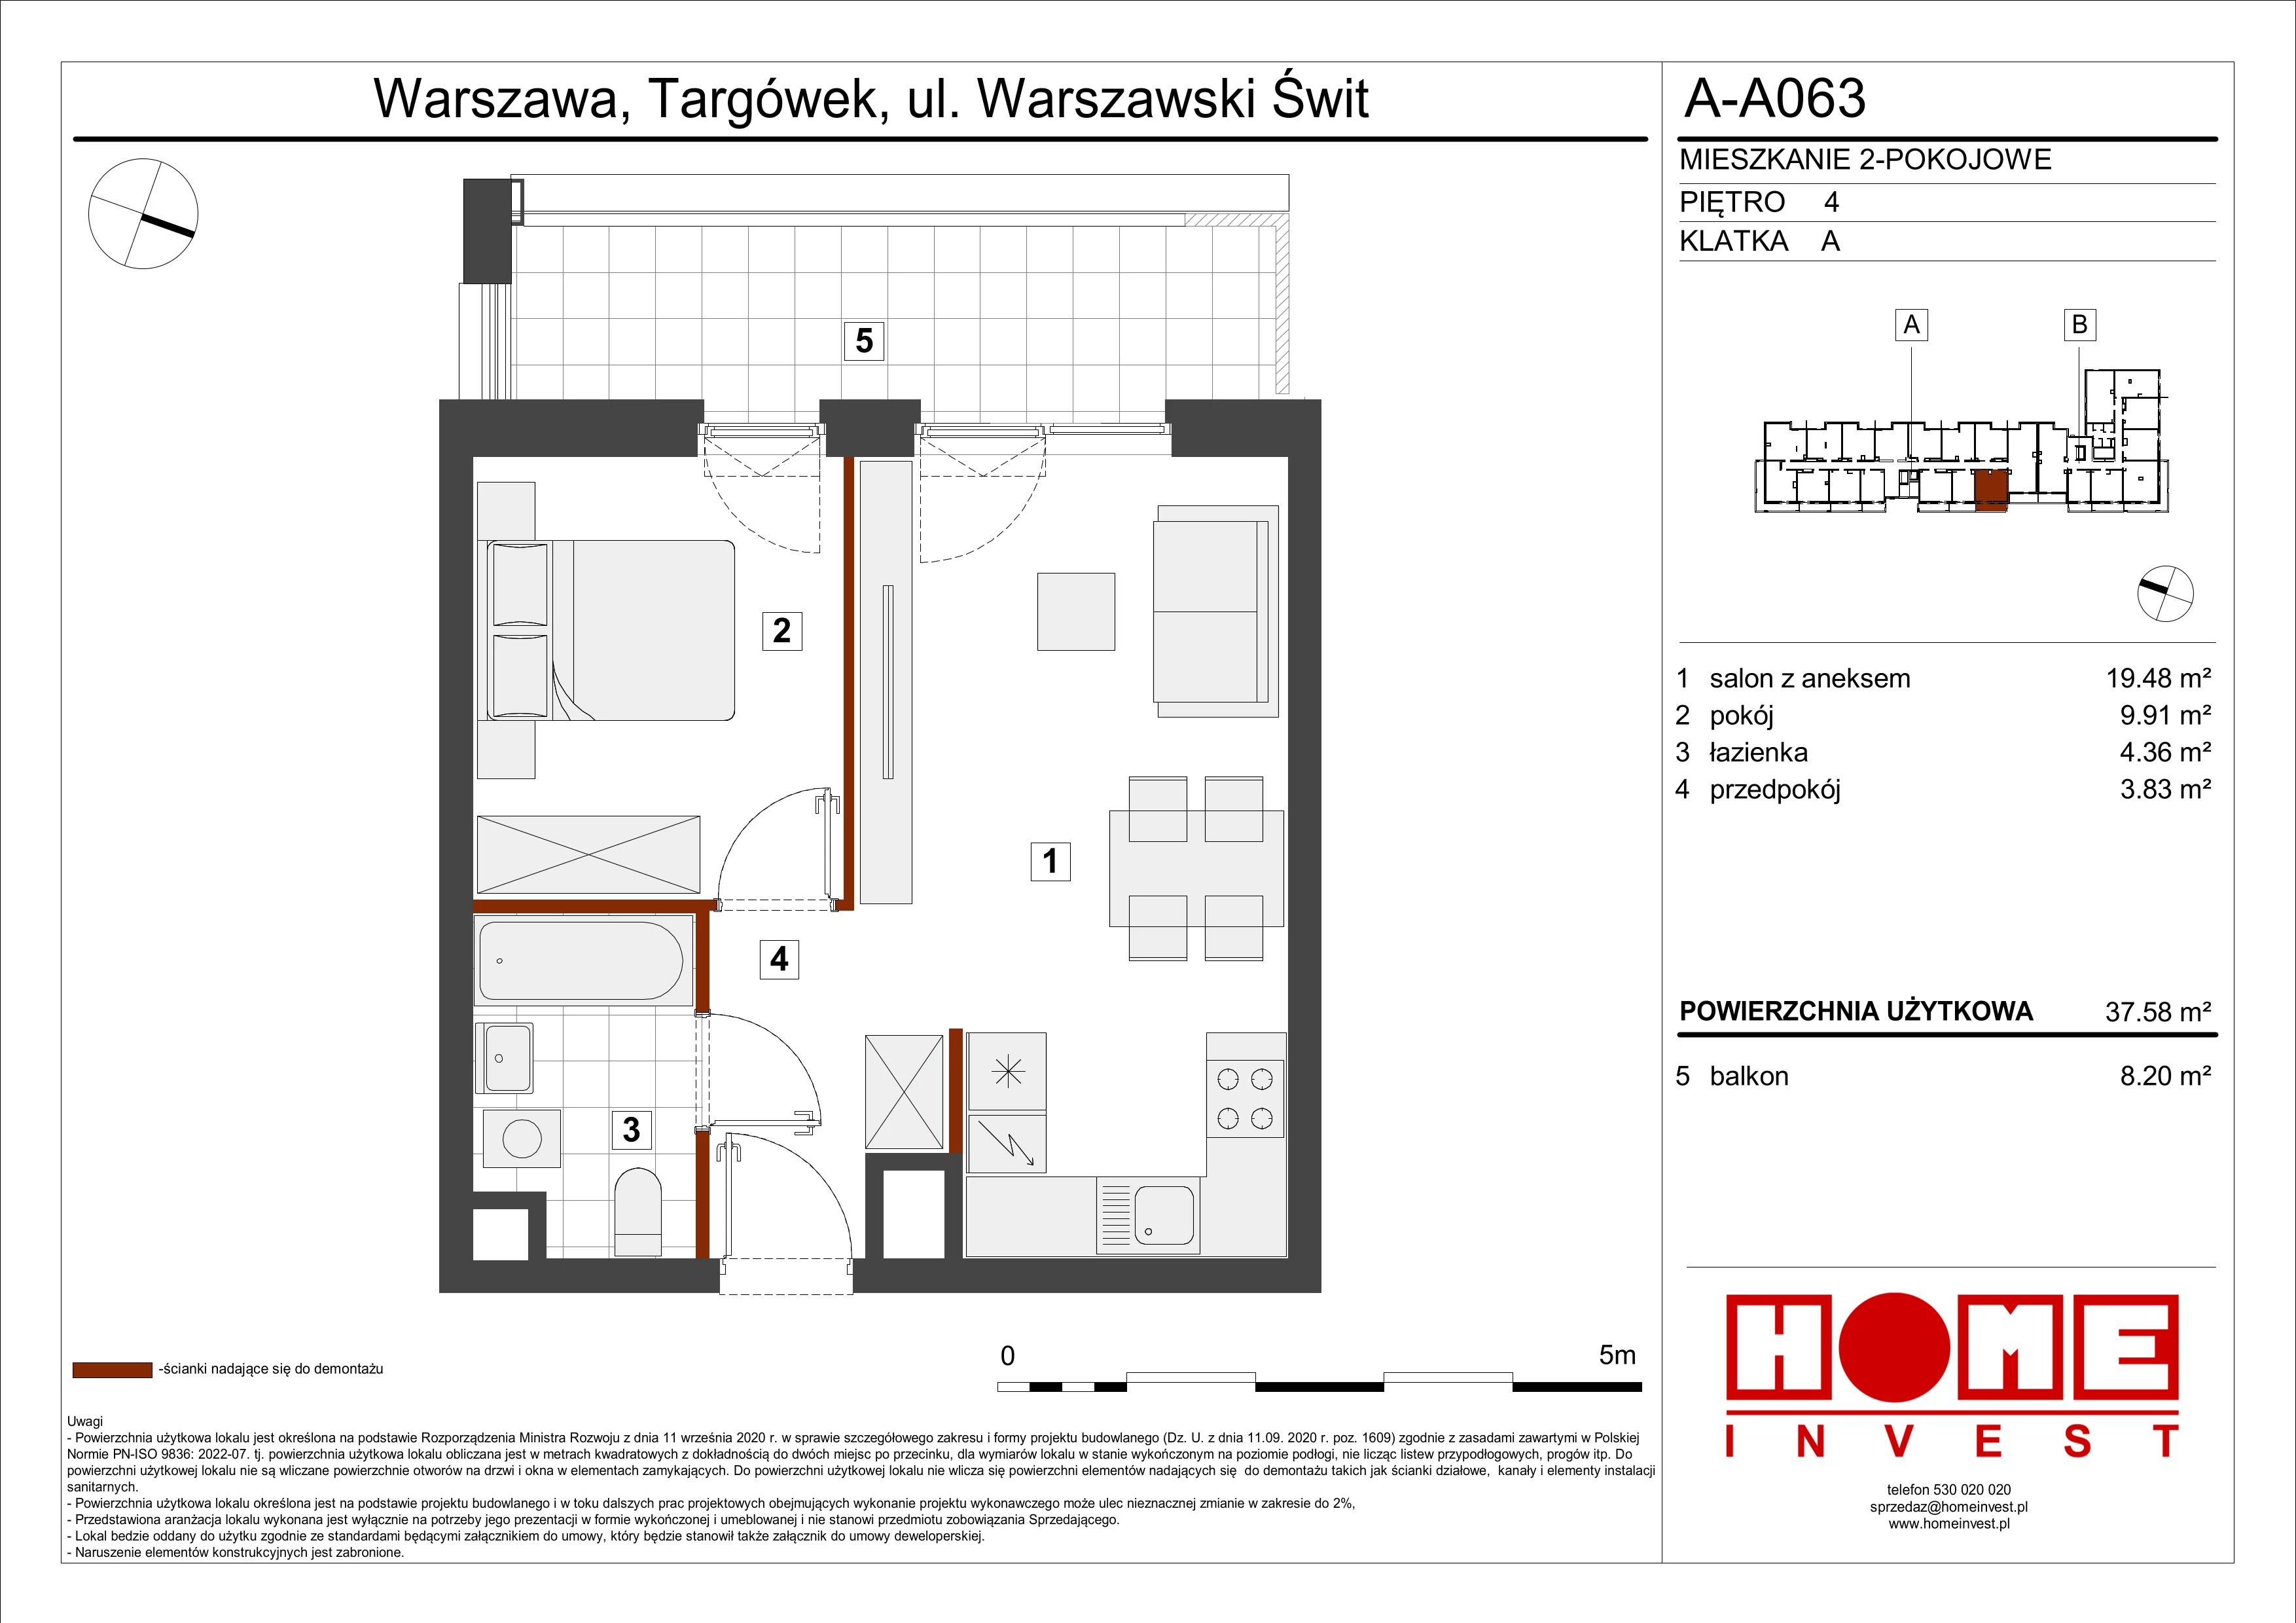 Mieszkanie 37,58 m², piętro 4, oferta nr A-A063, Warszawski Świt, Warszawa, Targówek, Bródno, ul. Warszawski Świt 5